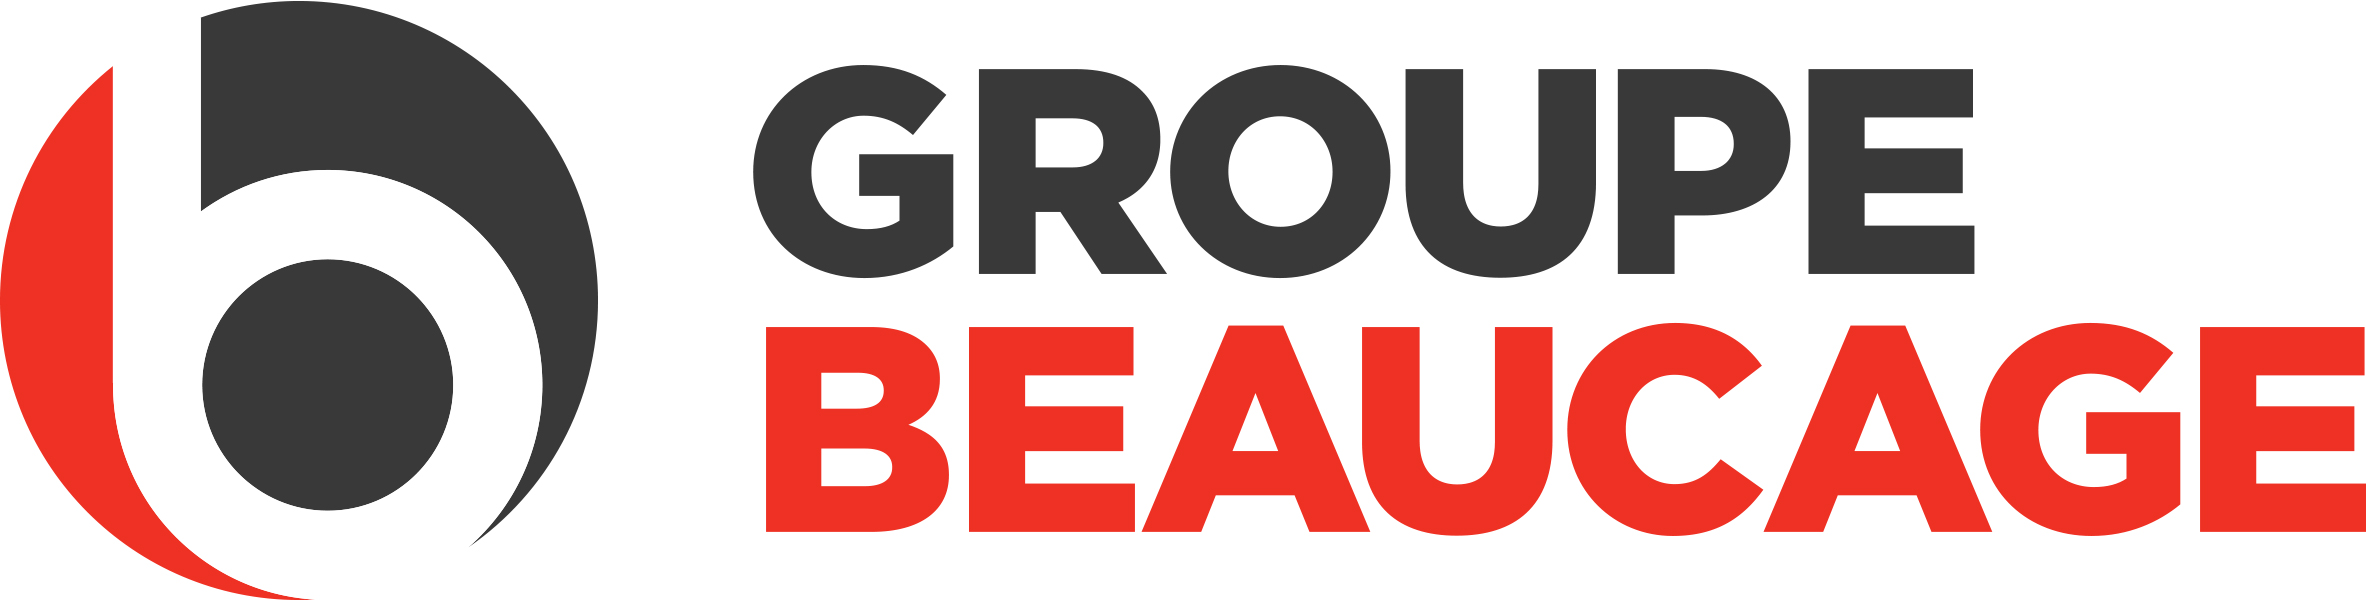 Logo Groupe Beaucage Véhicules neufs et usagés